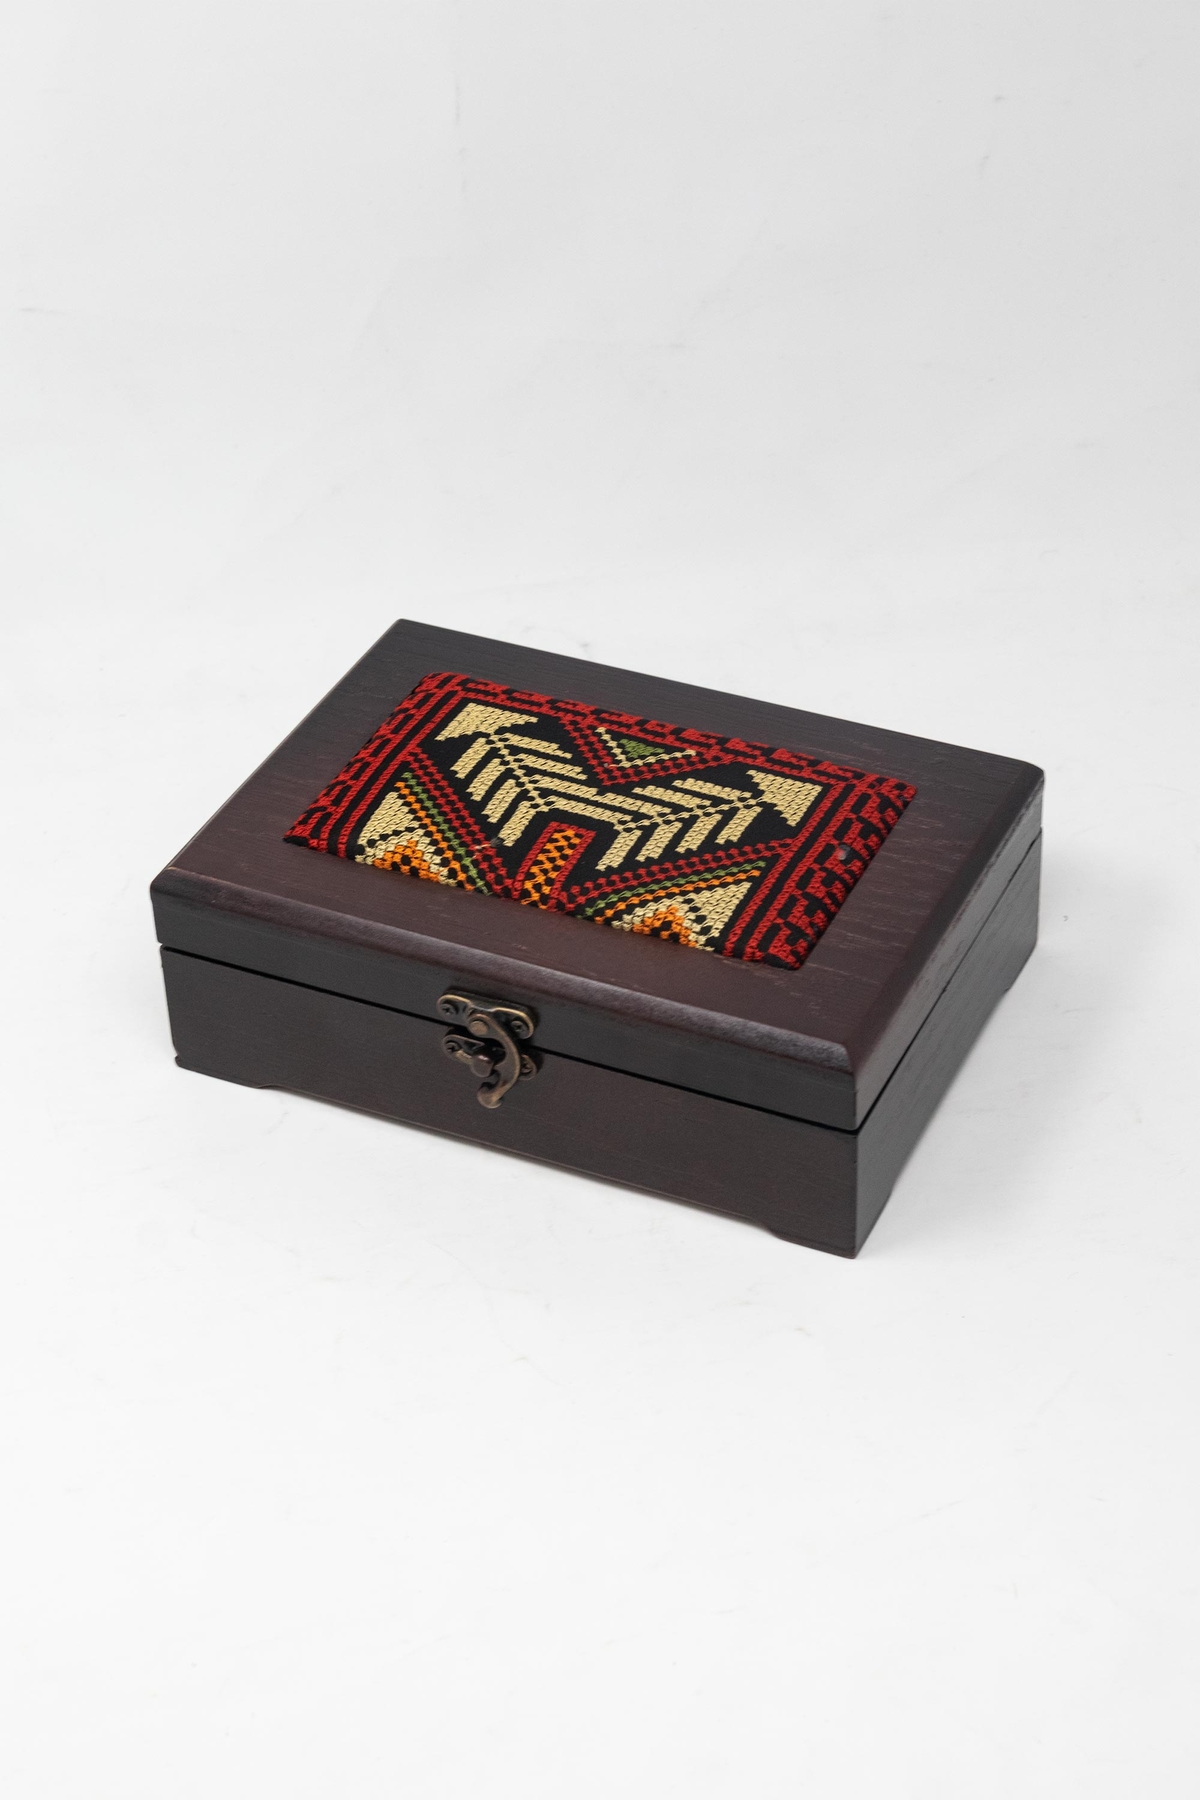 Rectangular Embroidered Wooden Box - Medium - Souq Fann